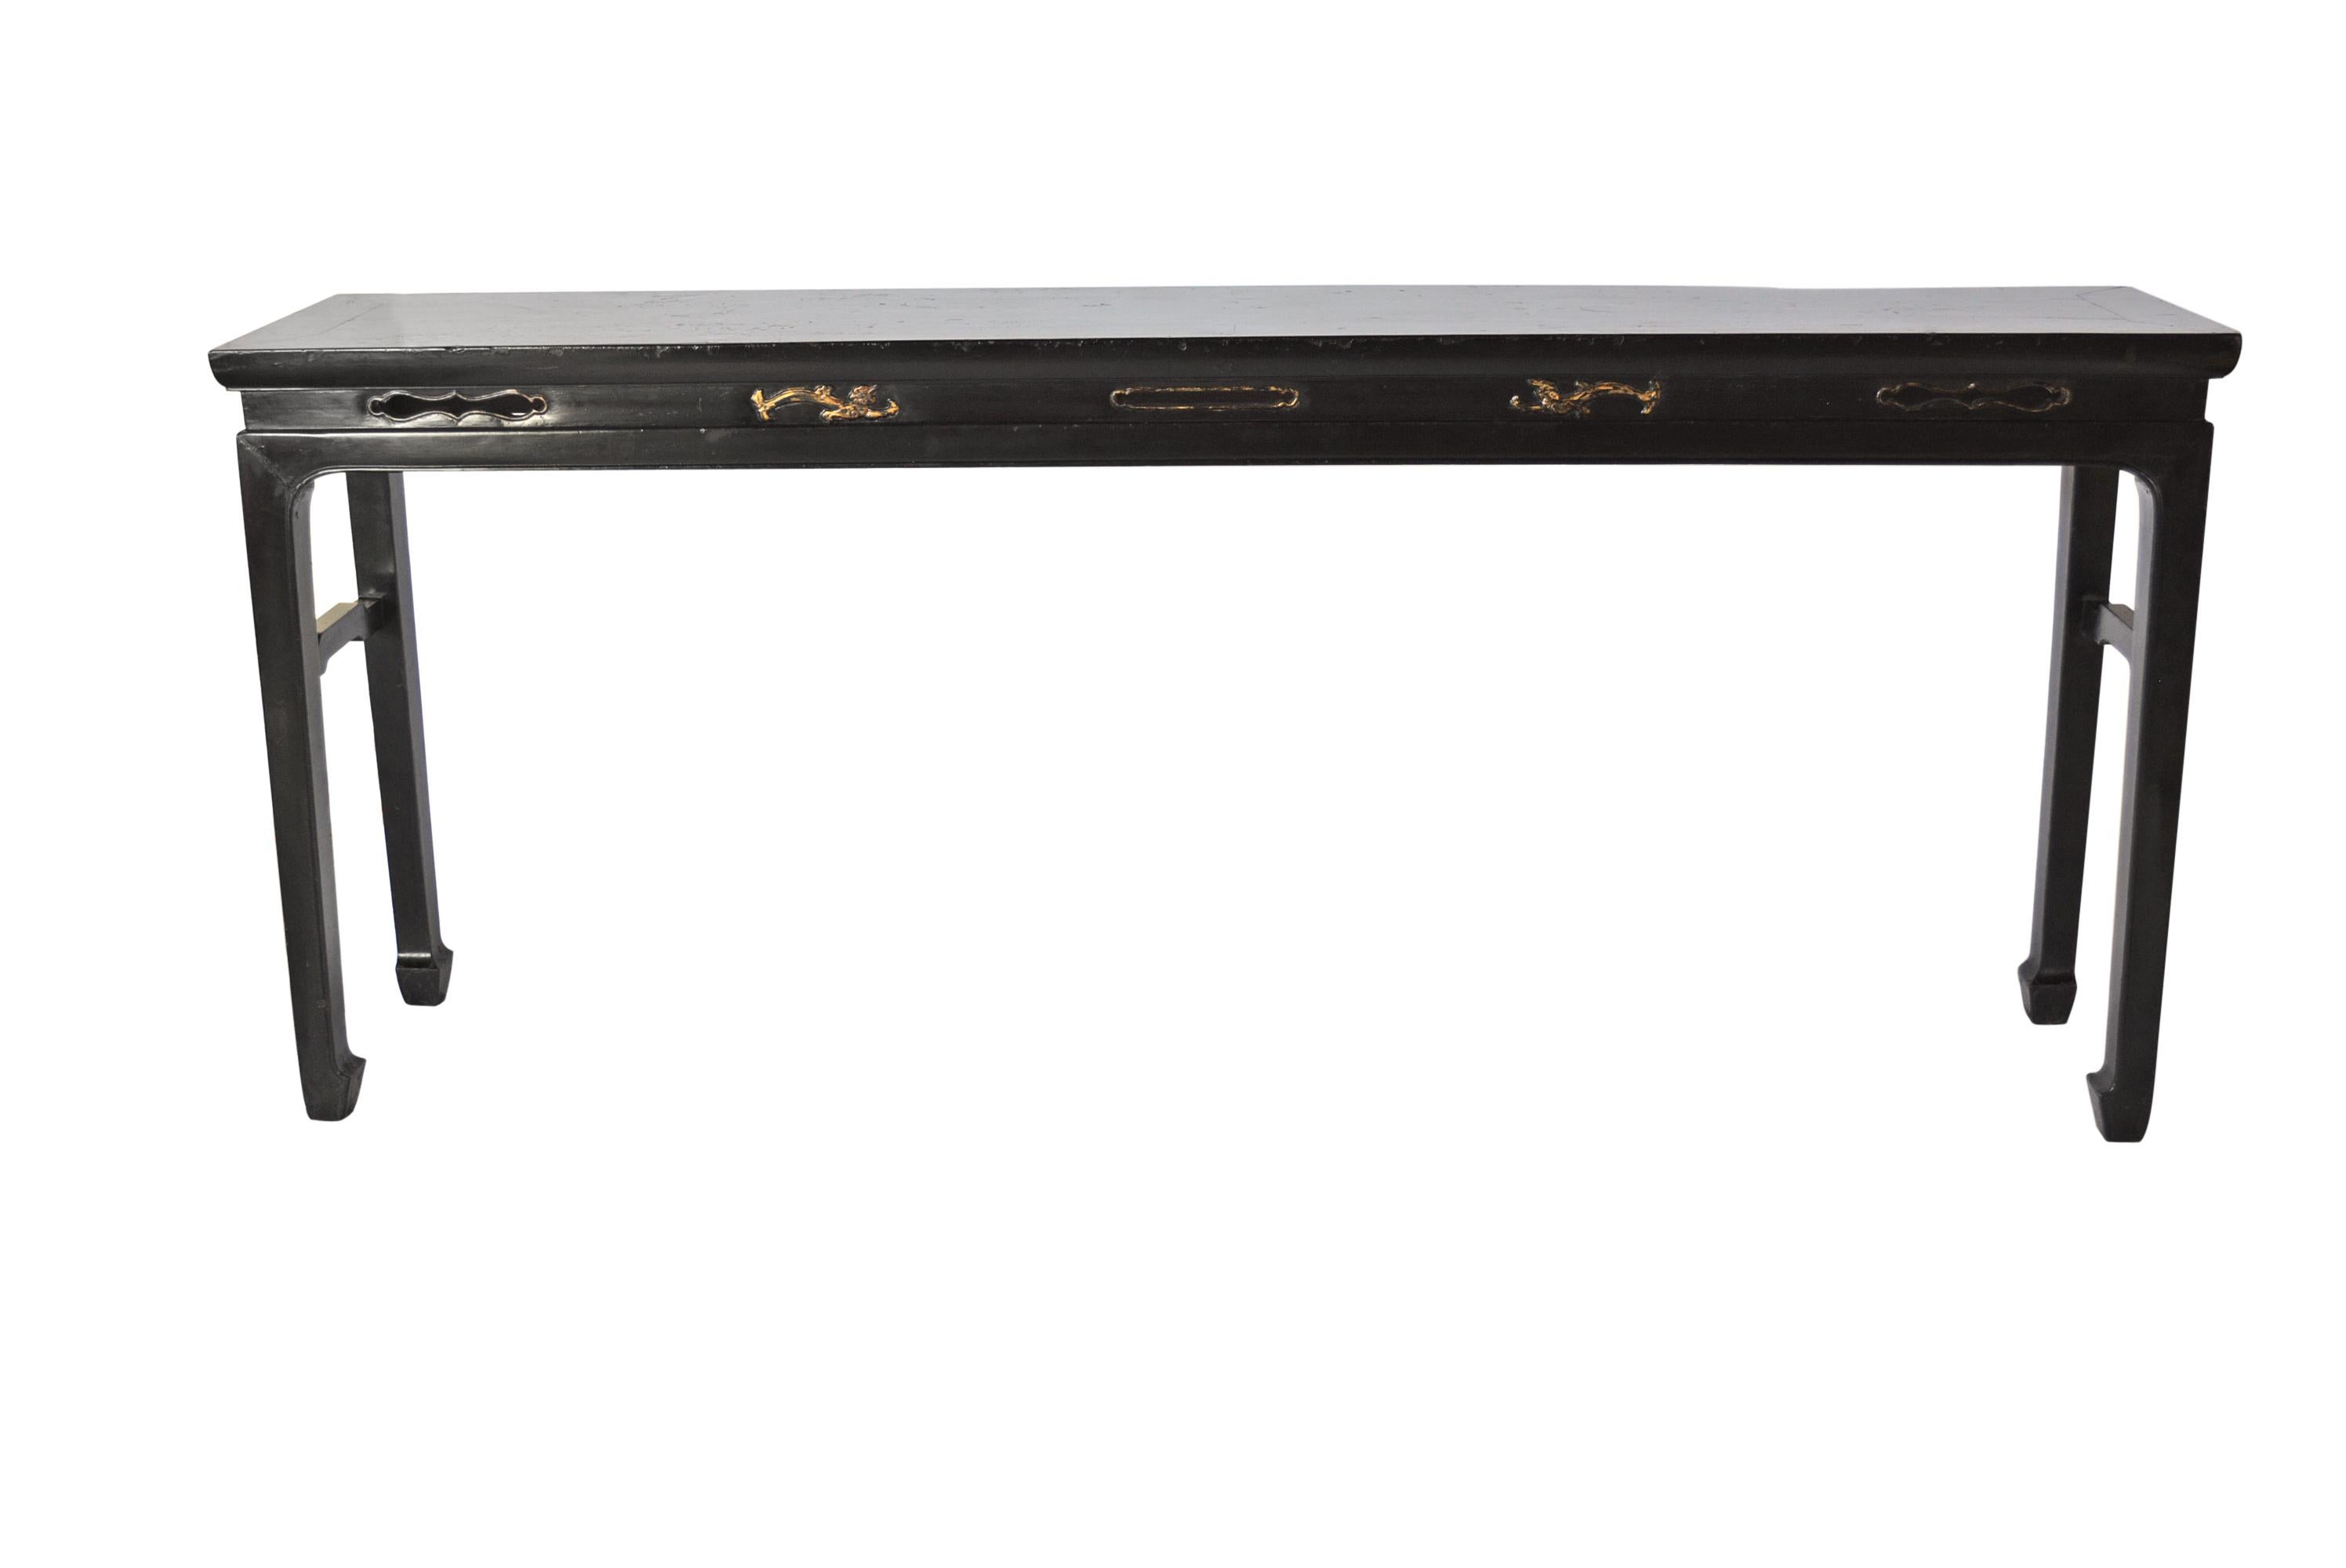 Cette élégante table longue en laque noire présente une taille décorée d'un bégonia allongé sculpté en style ouvert. Le plateau est en bois massif. Les pattes sont droites avec de grands sabots de cheval. Un tendeur de dos d'âne est utilisé entre